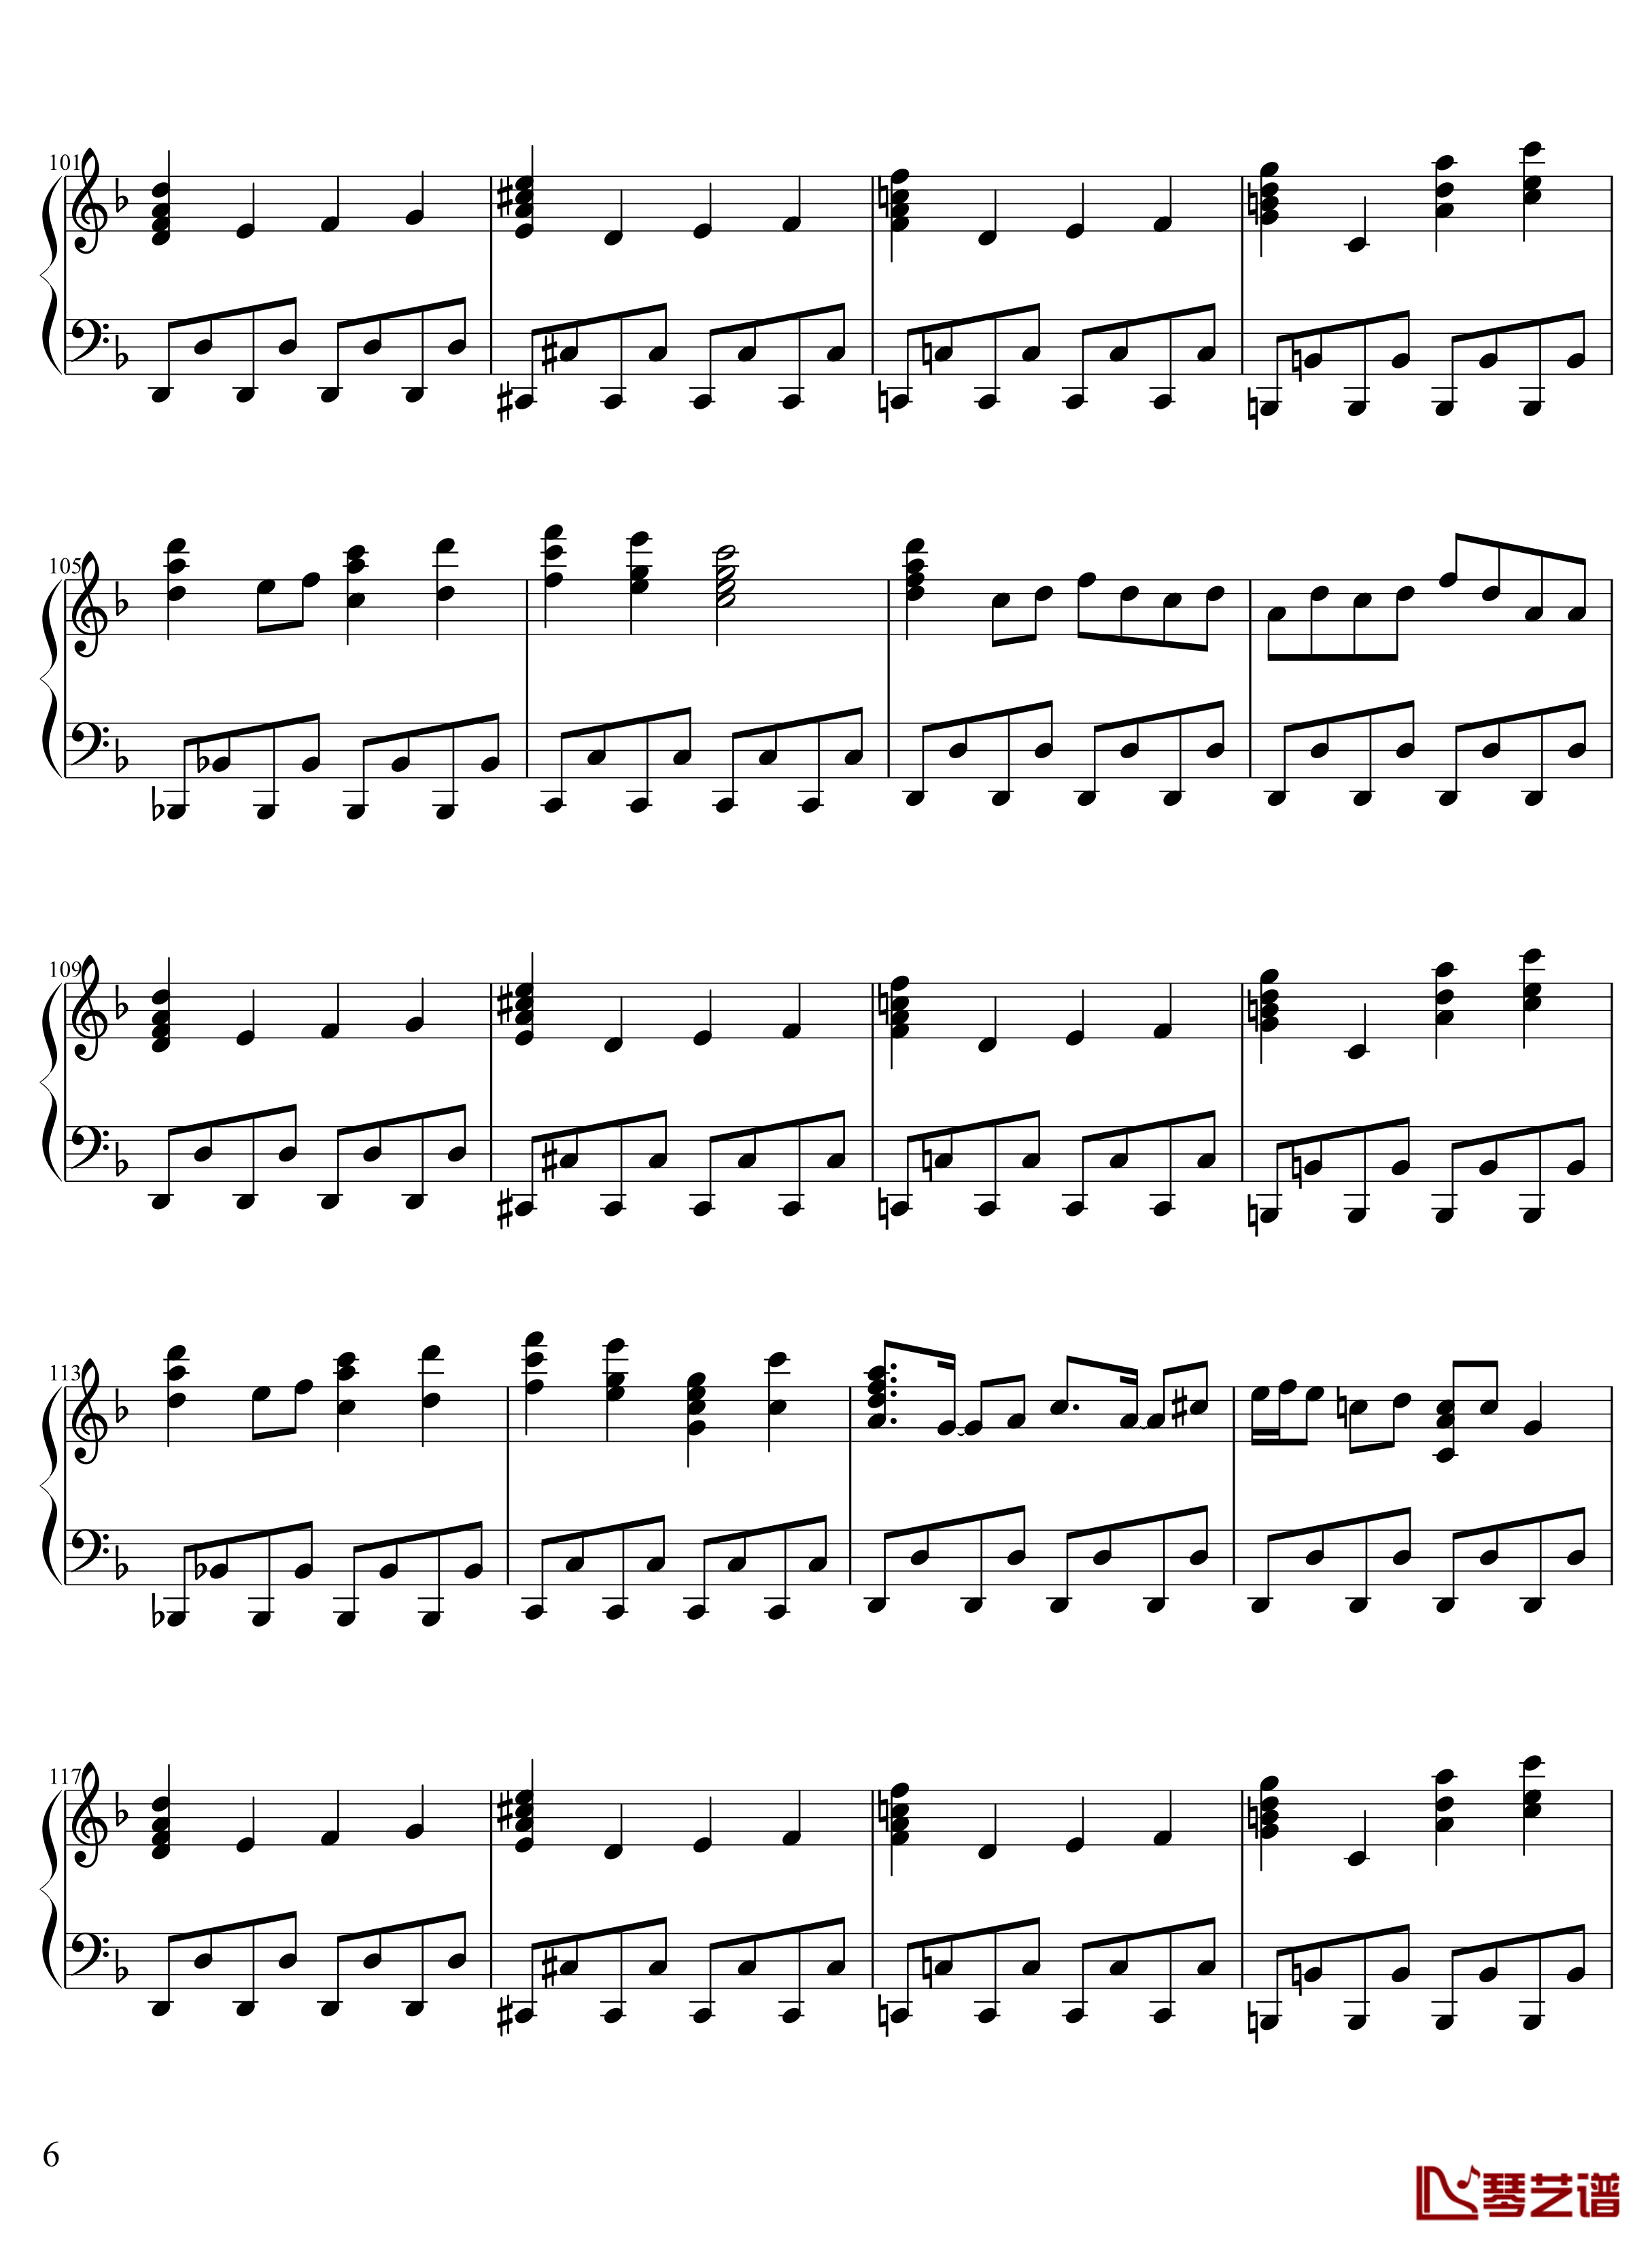 13 ピュアヒューリーズ钢琴谱- 心の在処-zun